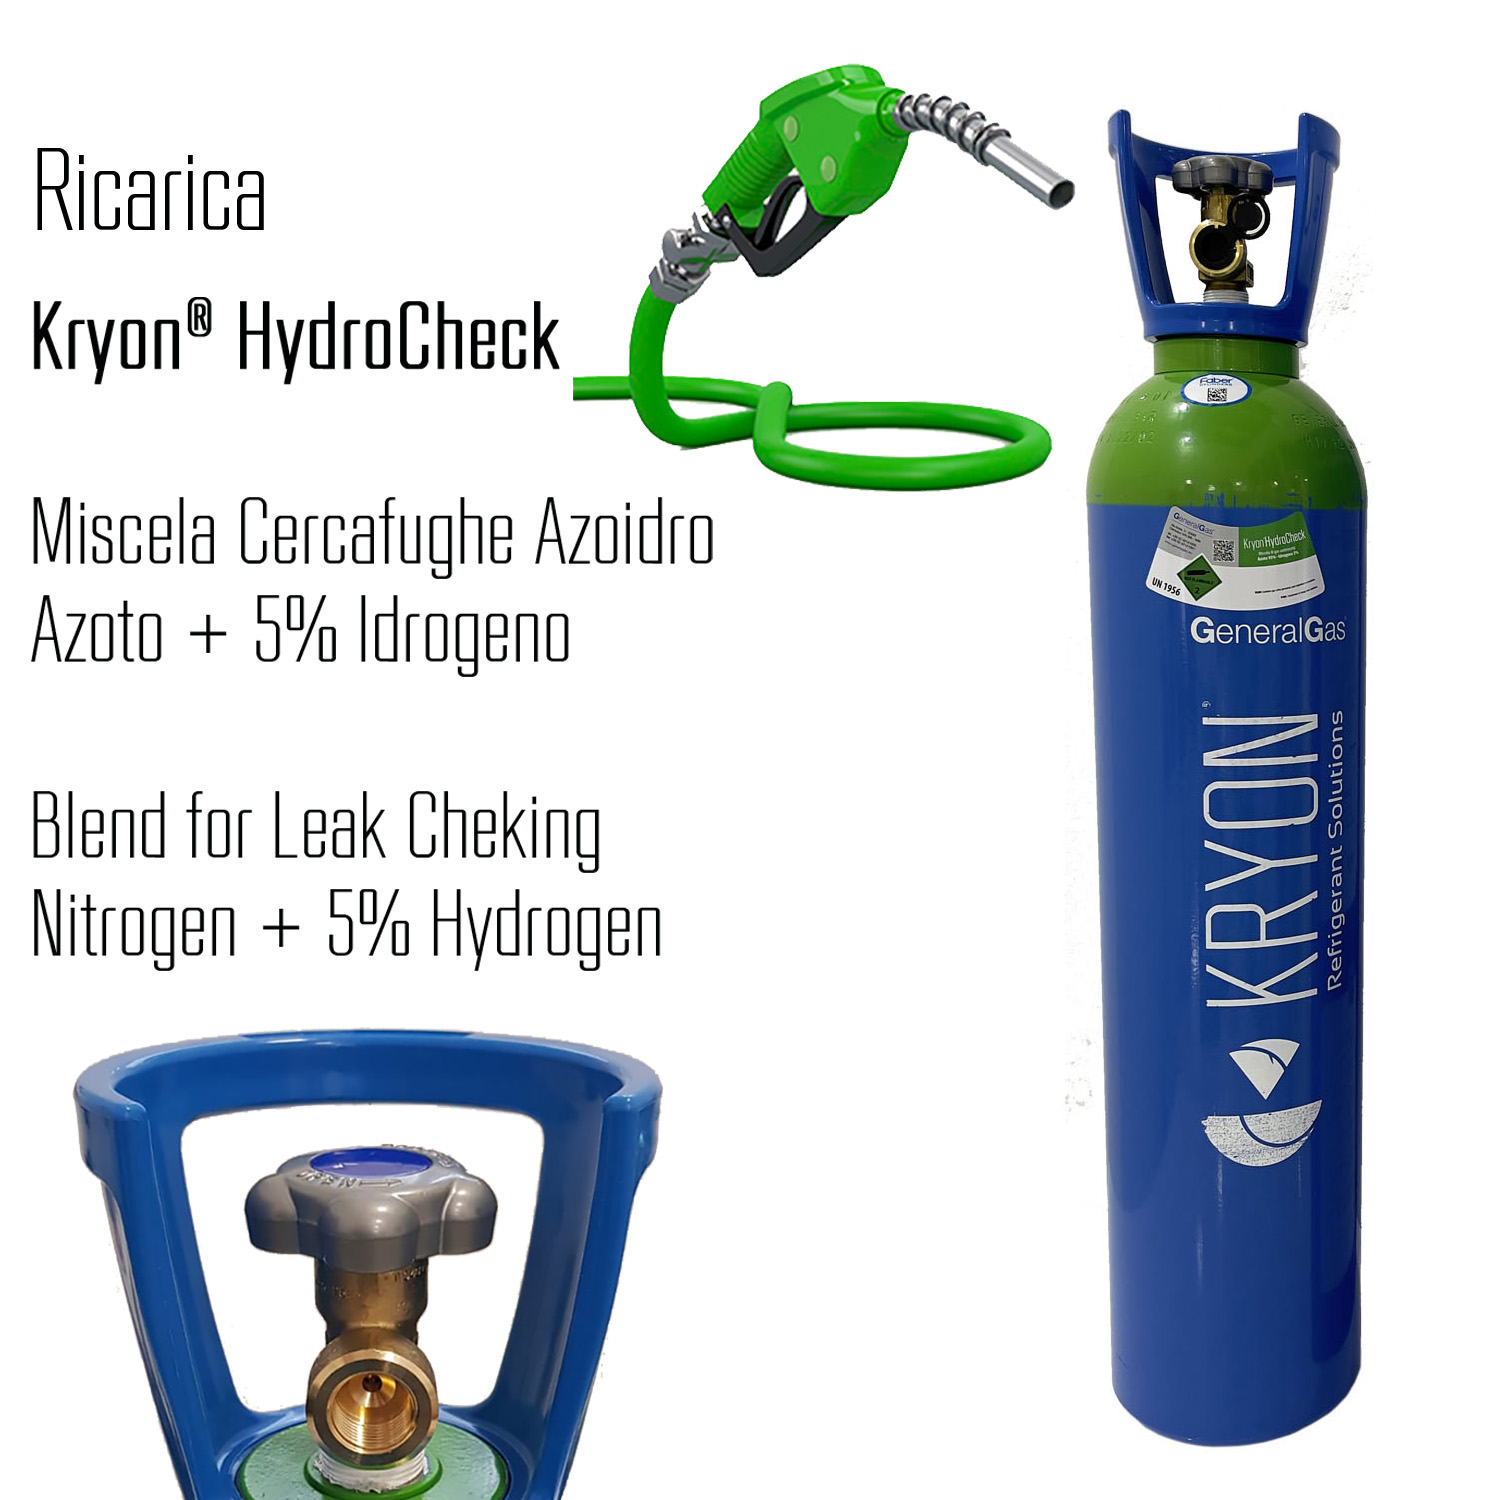 Kryon® HydroCheck - ricarica per bombola 14 litri - 3 mc - azoto 5% idrogeno (miscela cercafughe azoidro) - Foto 1 